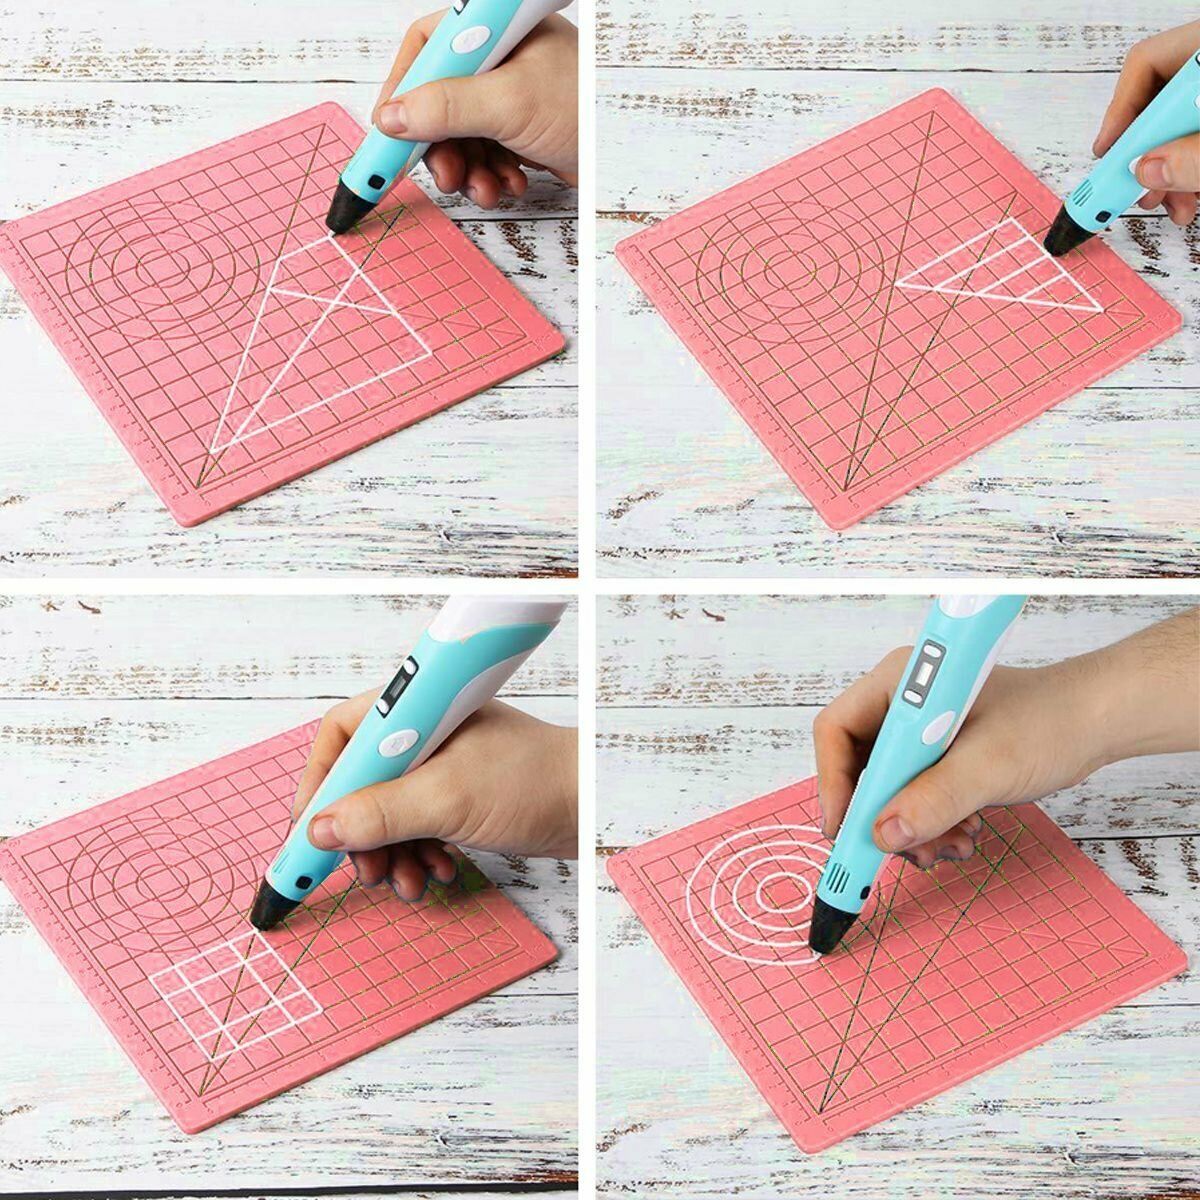 Коврик для 3д ручки силиконовый набор для 3d рисования / термостойкий силиконовый коврик для 3d ручки + защитные напальчники / Розовый